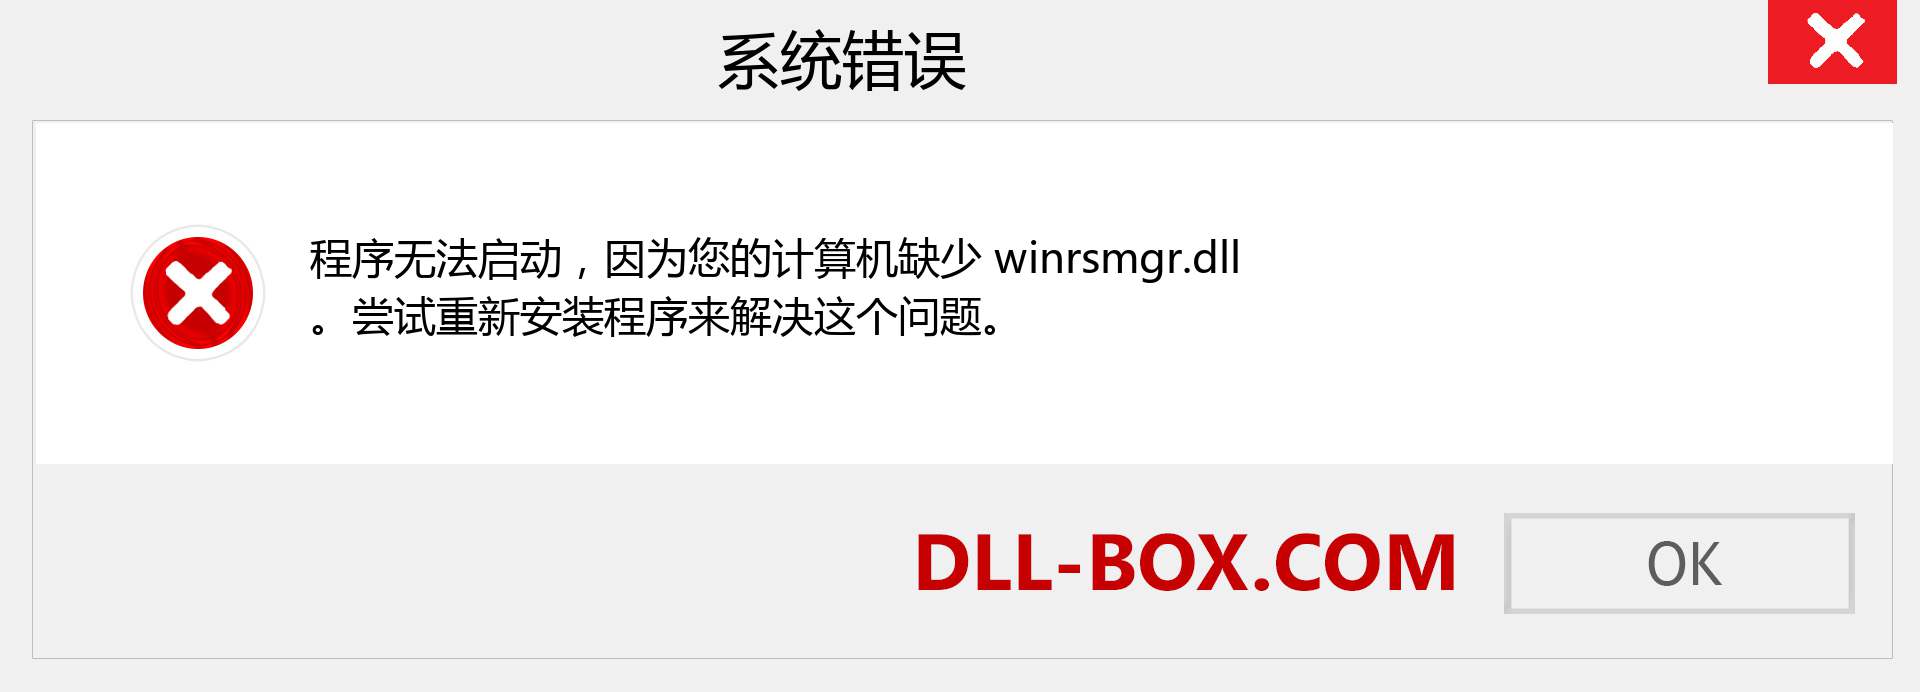 winrsmgr.dll 文件丢失？。 适用于 Windows 7、8、10 的下载 - 修复 Windows、照片、图像上的 winrsmgr dll 丢失错误